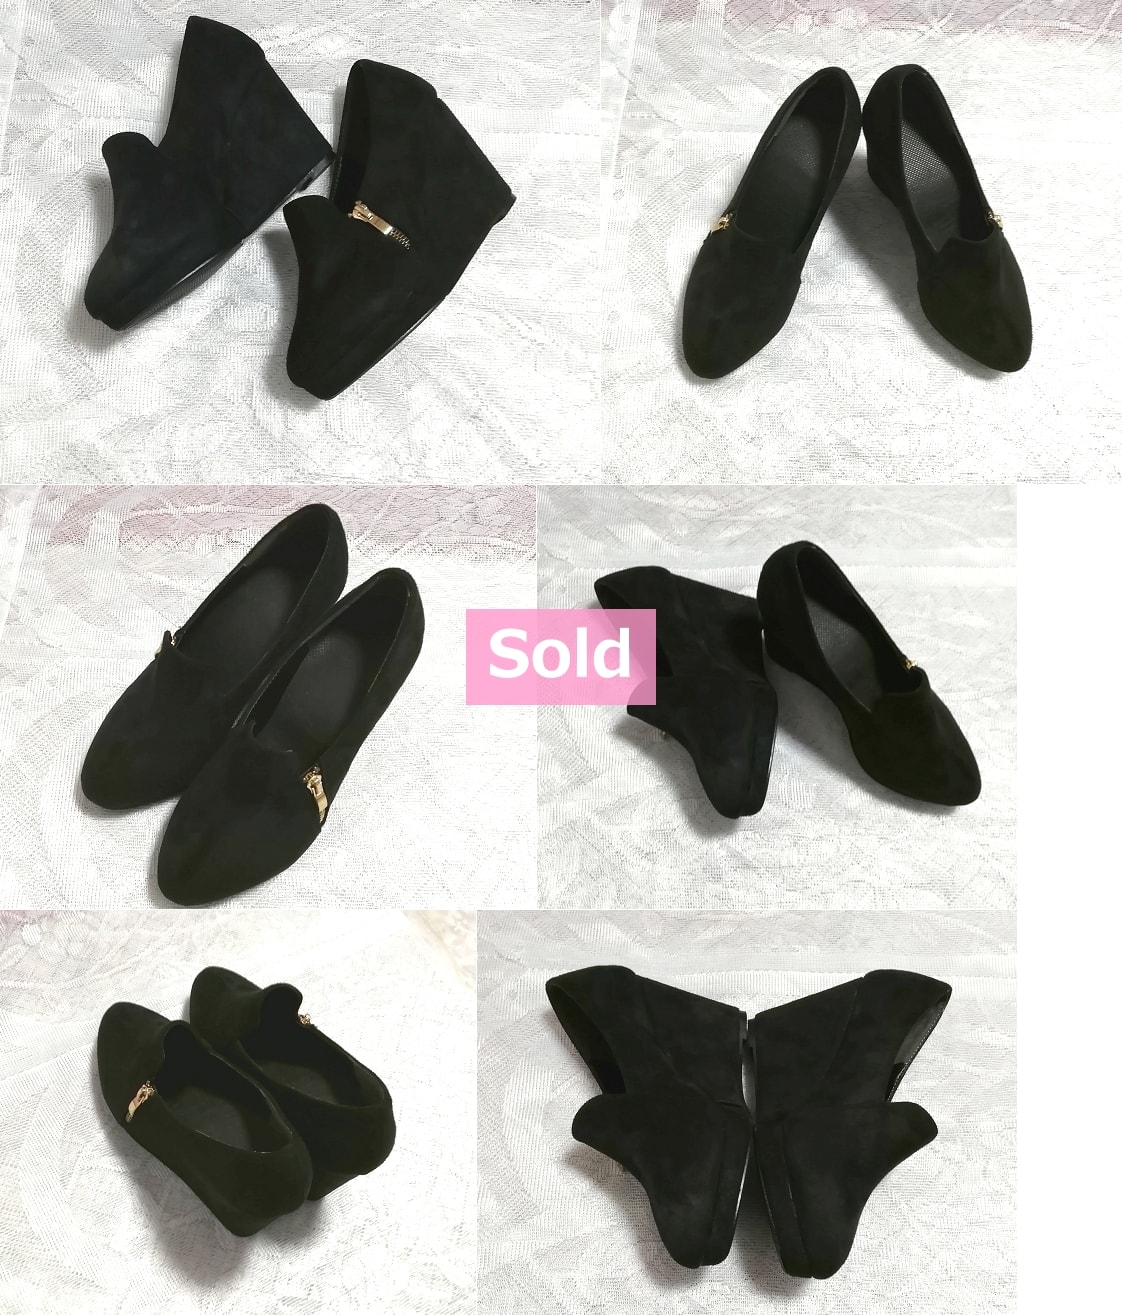 Schwarz Schwarz 10 cm / Einfache Damenschuhe / Sandalen / High Heels / Raumschuhe Schwarz 3, 93 in dicker Unterseite einfache Damenschuhe Sandale